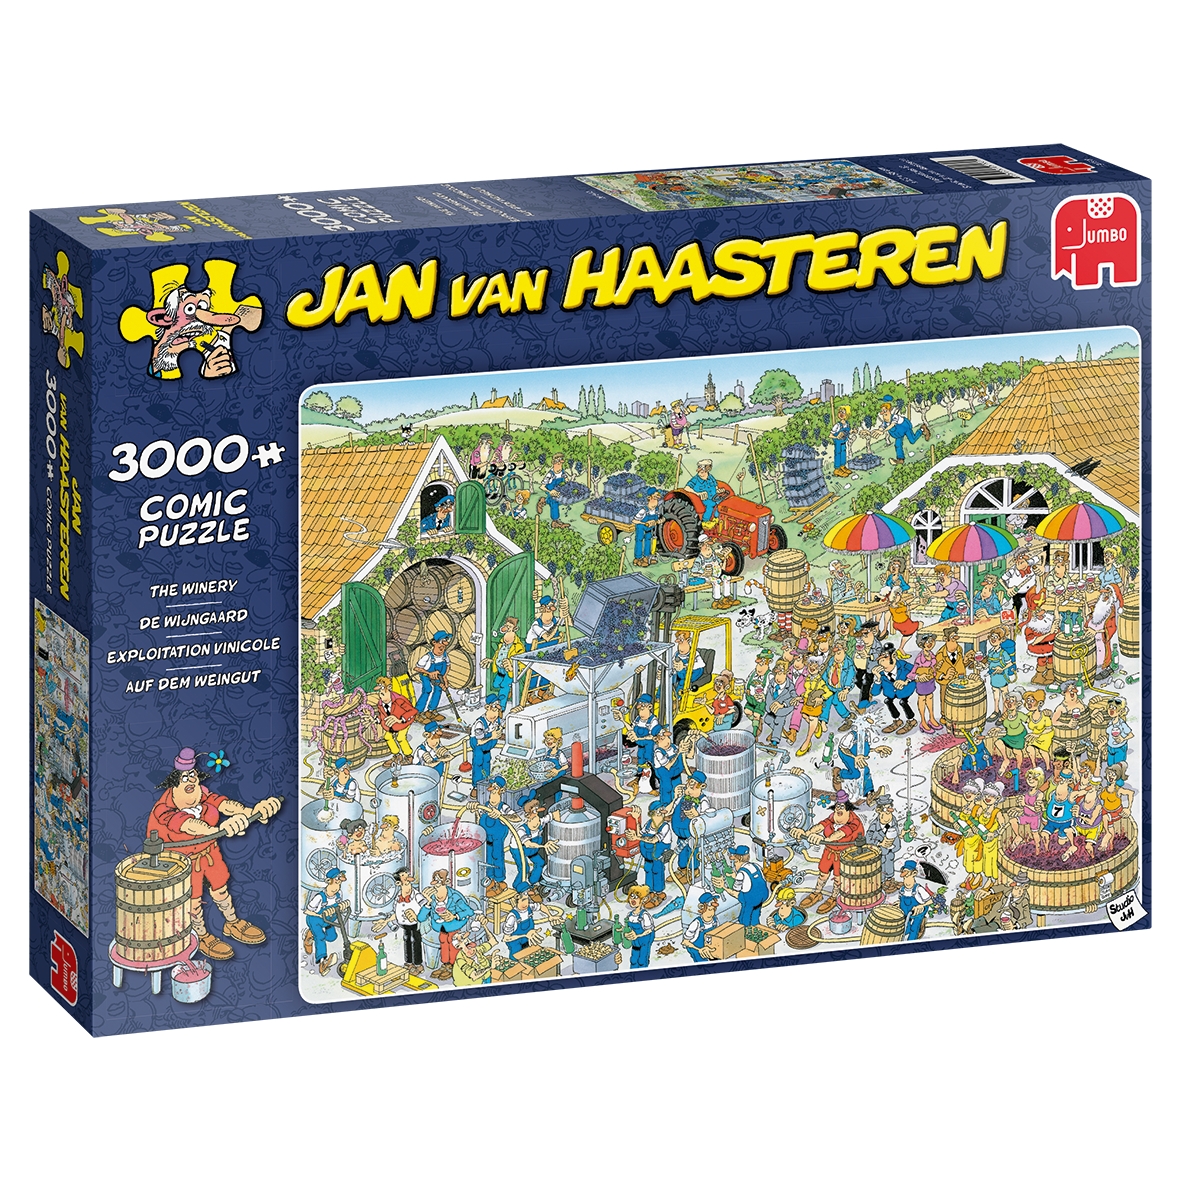 Puzzle 1000: Haasteren - Mistrzostwa układania puzzli (19090)